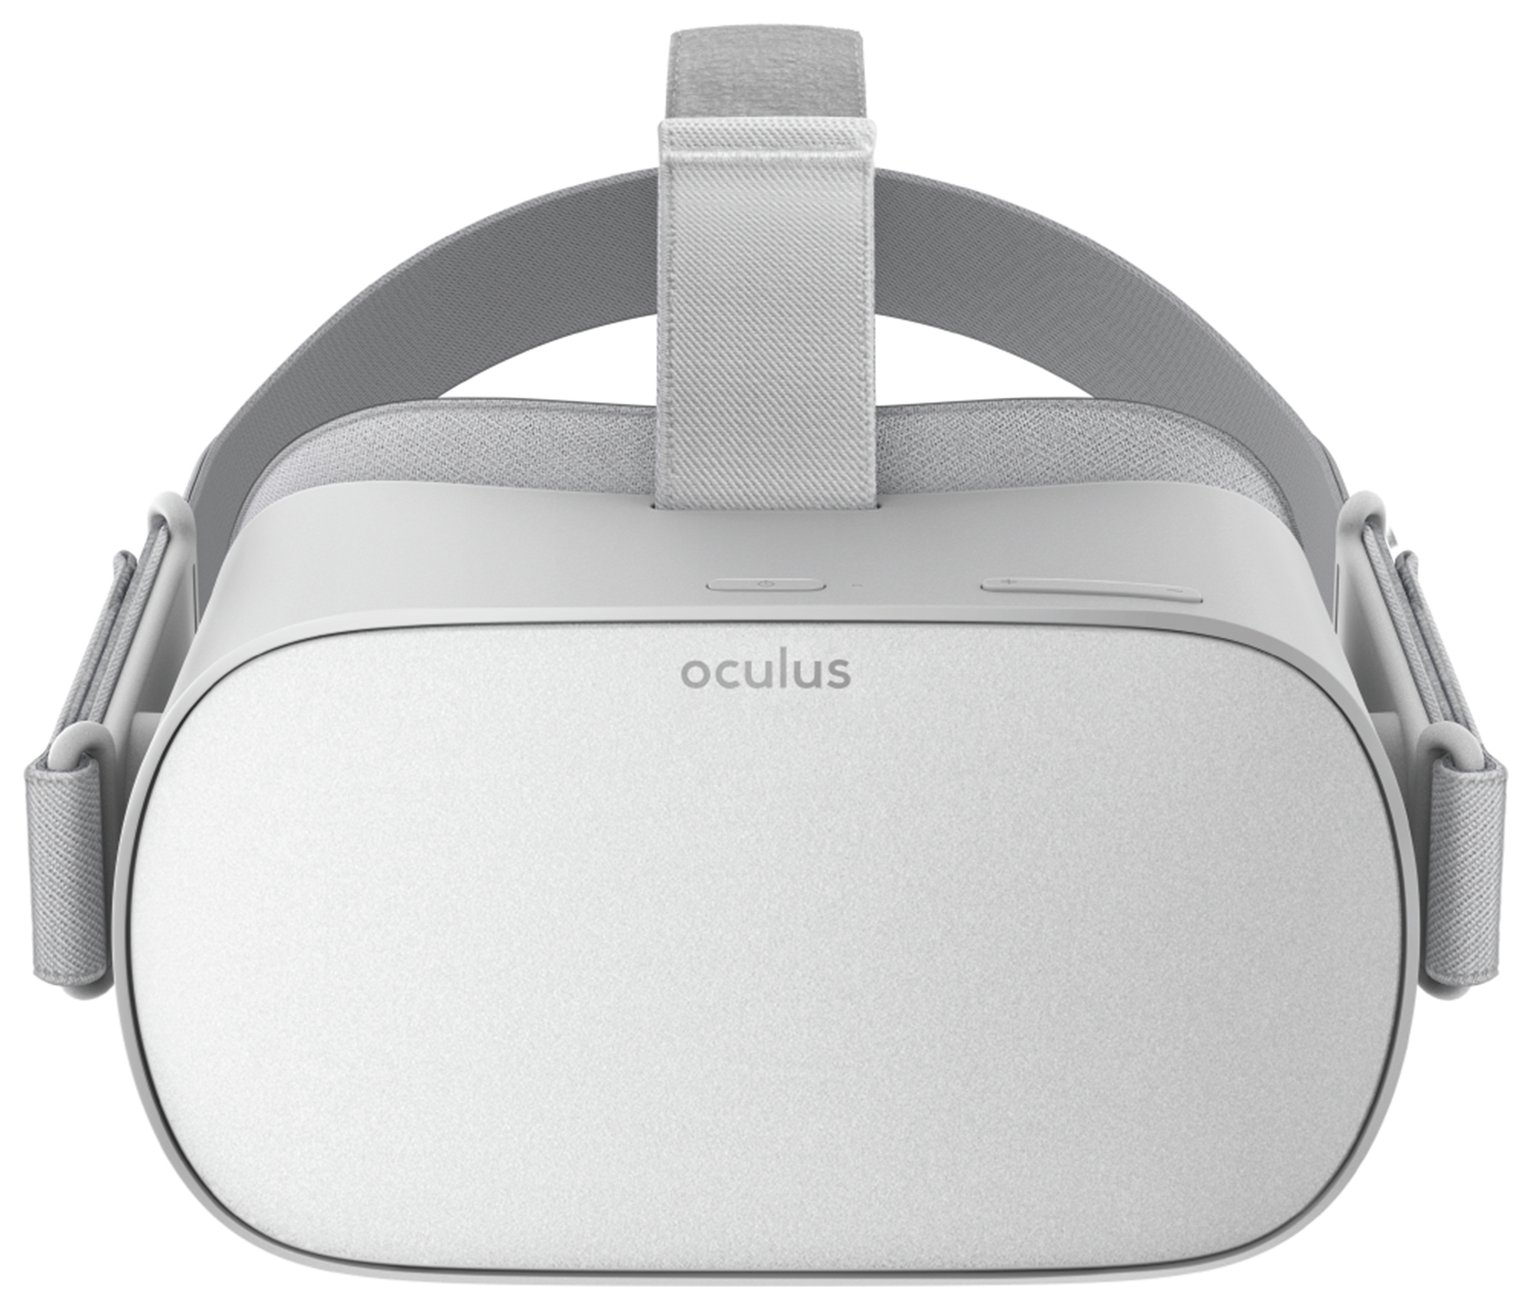 oculus go argos